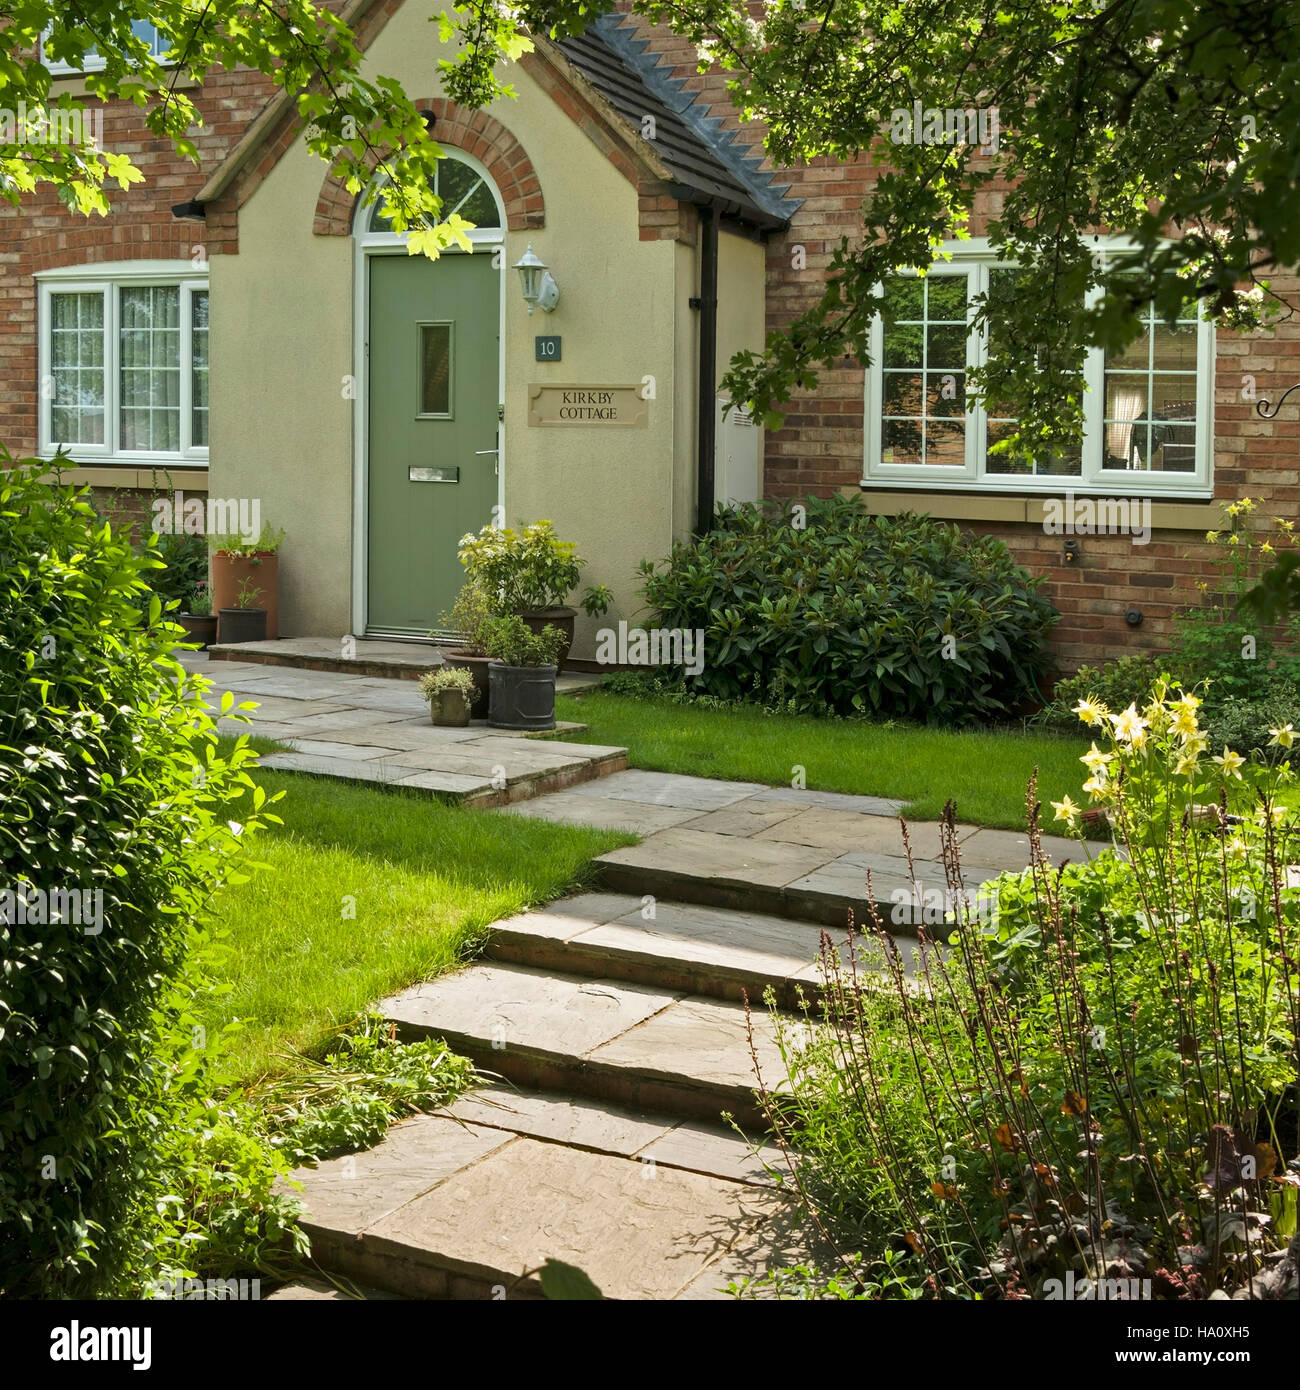 Jolie maison de style chalet moderne avec des marches de pierre et le chemin dans le jardin avant, Leicestershire, Angleterre, Royaume-Uni. Banque D'Images